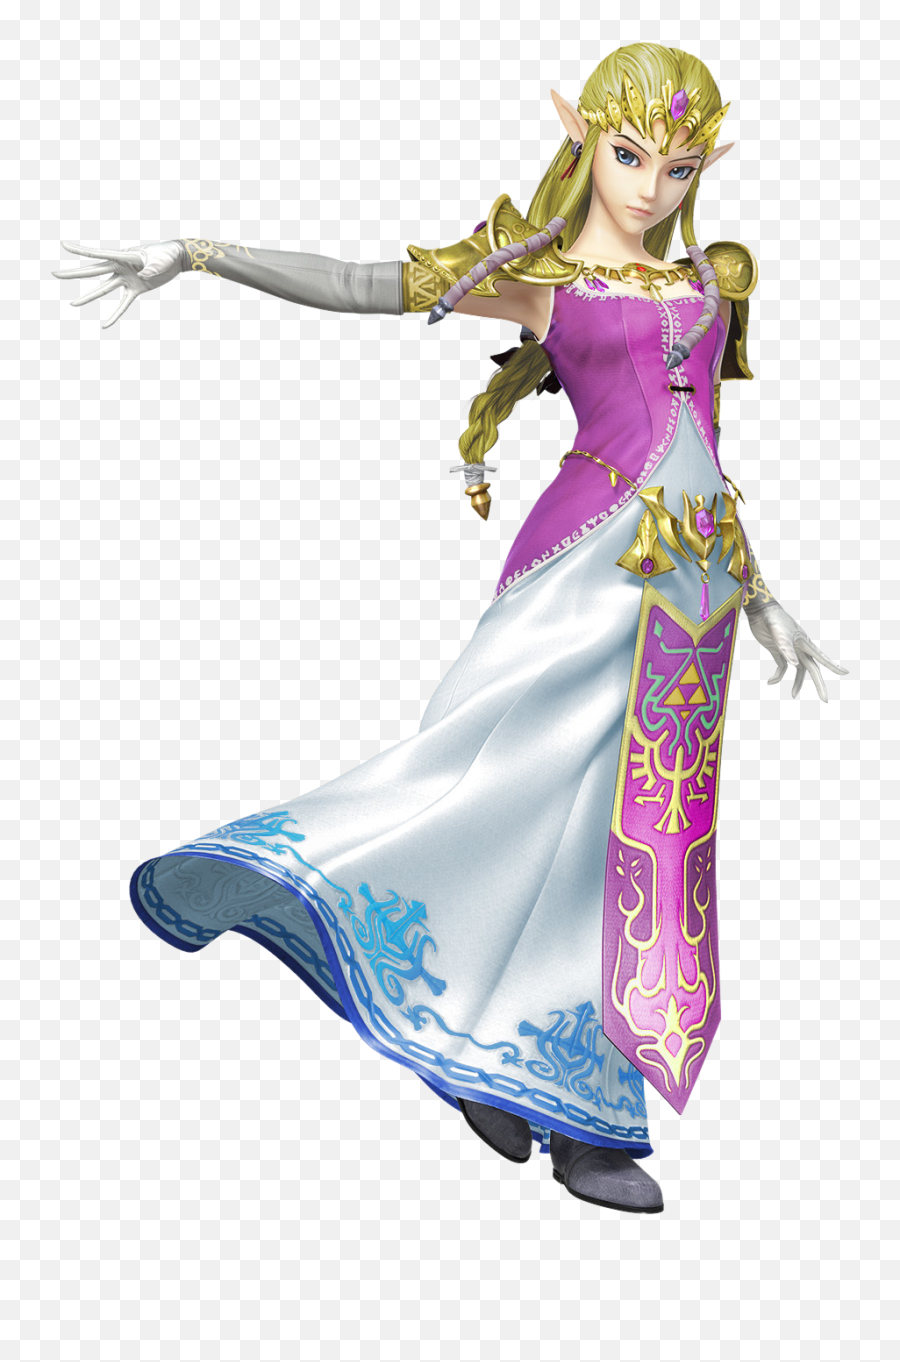 Download Princesses Prefer Pink - Super Smash Bros Wii U Emoji,Super Smash Bros For Wii U Logo